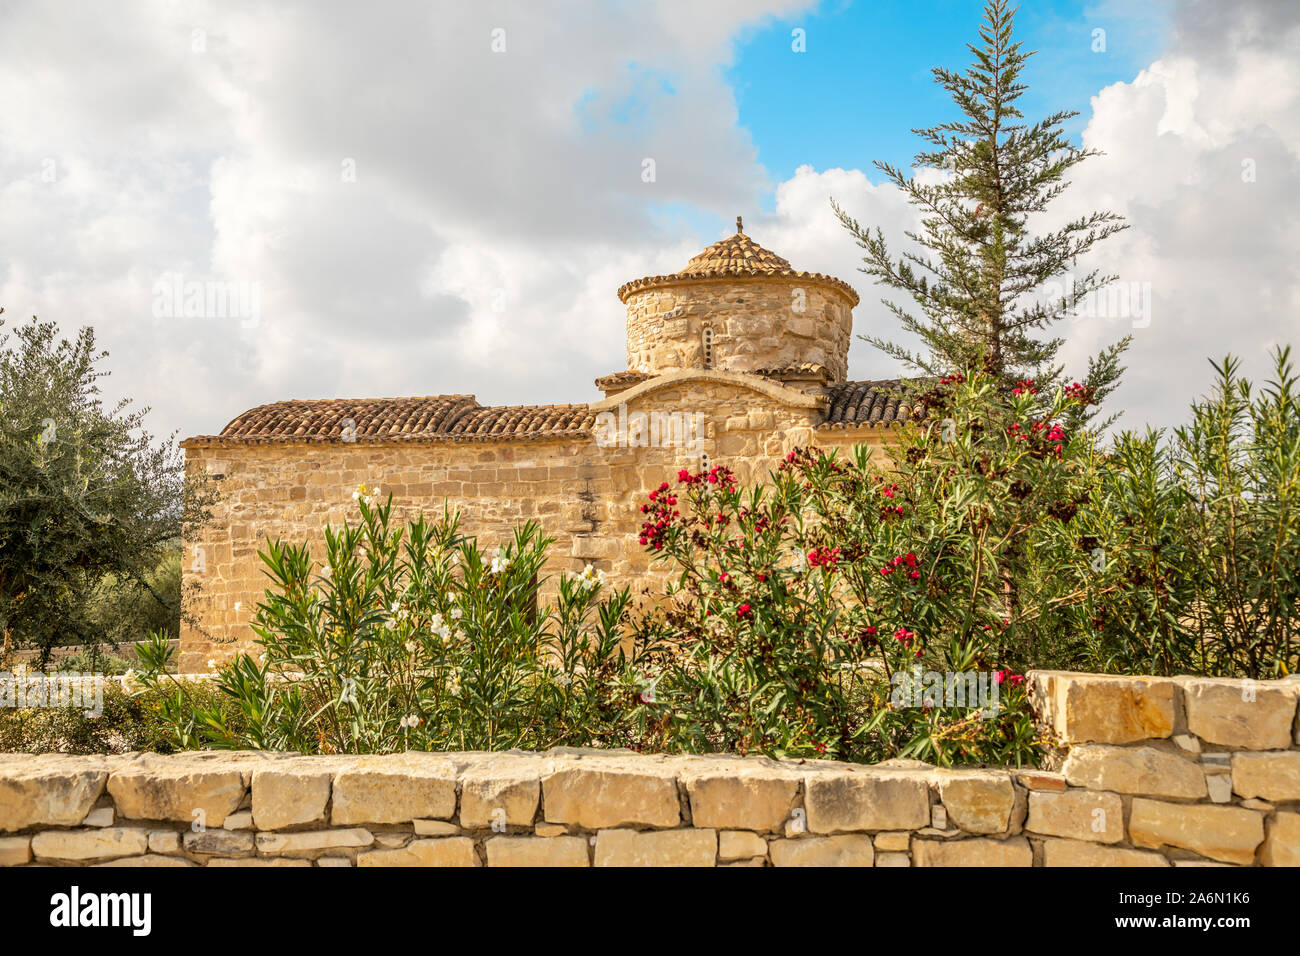 Panagia tou Kampou or Our Lady of the Fields 7th centrury Byzantine church, Choirokoitia, Cyprus Stock Photo